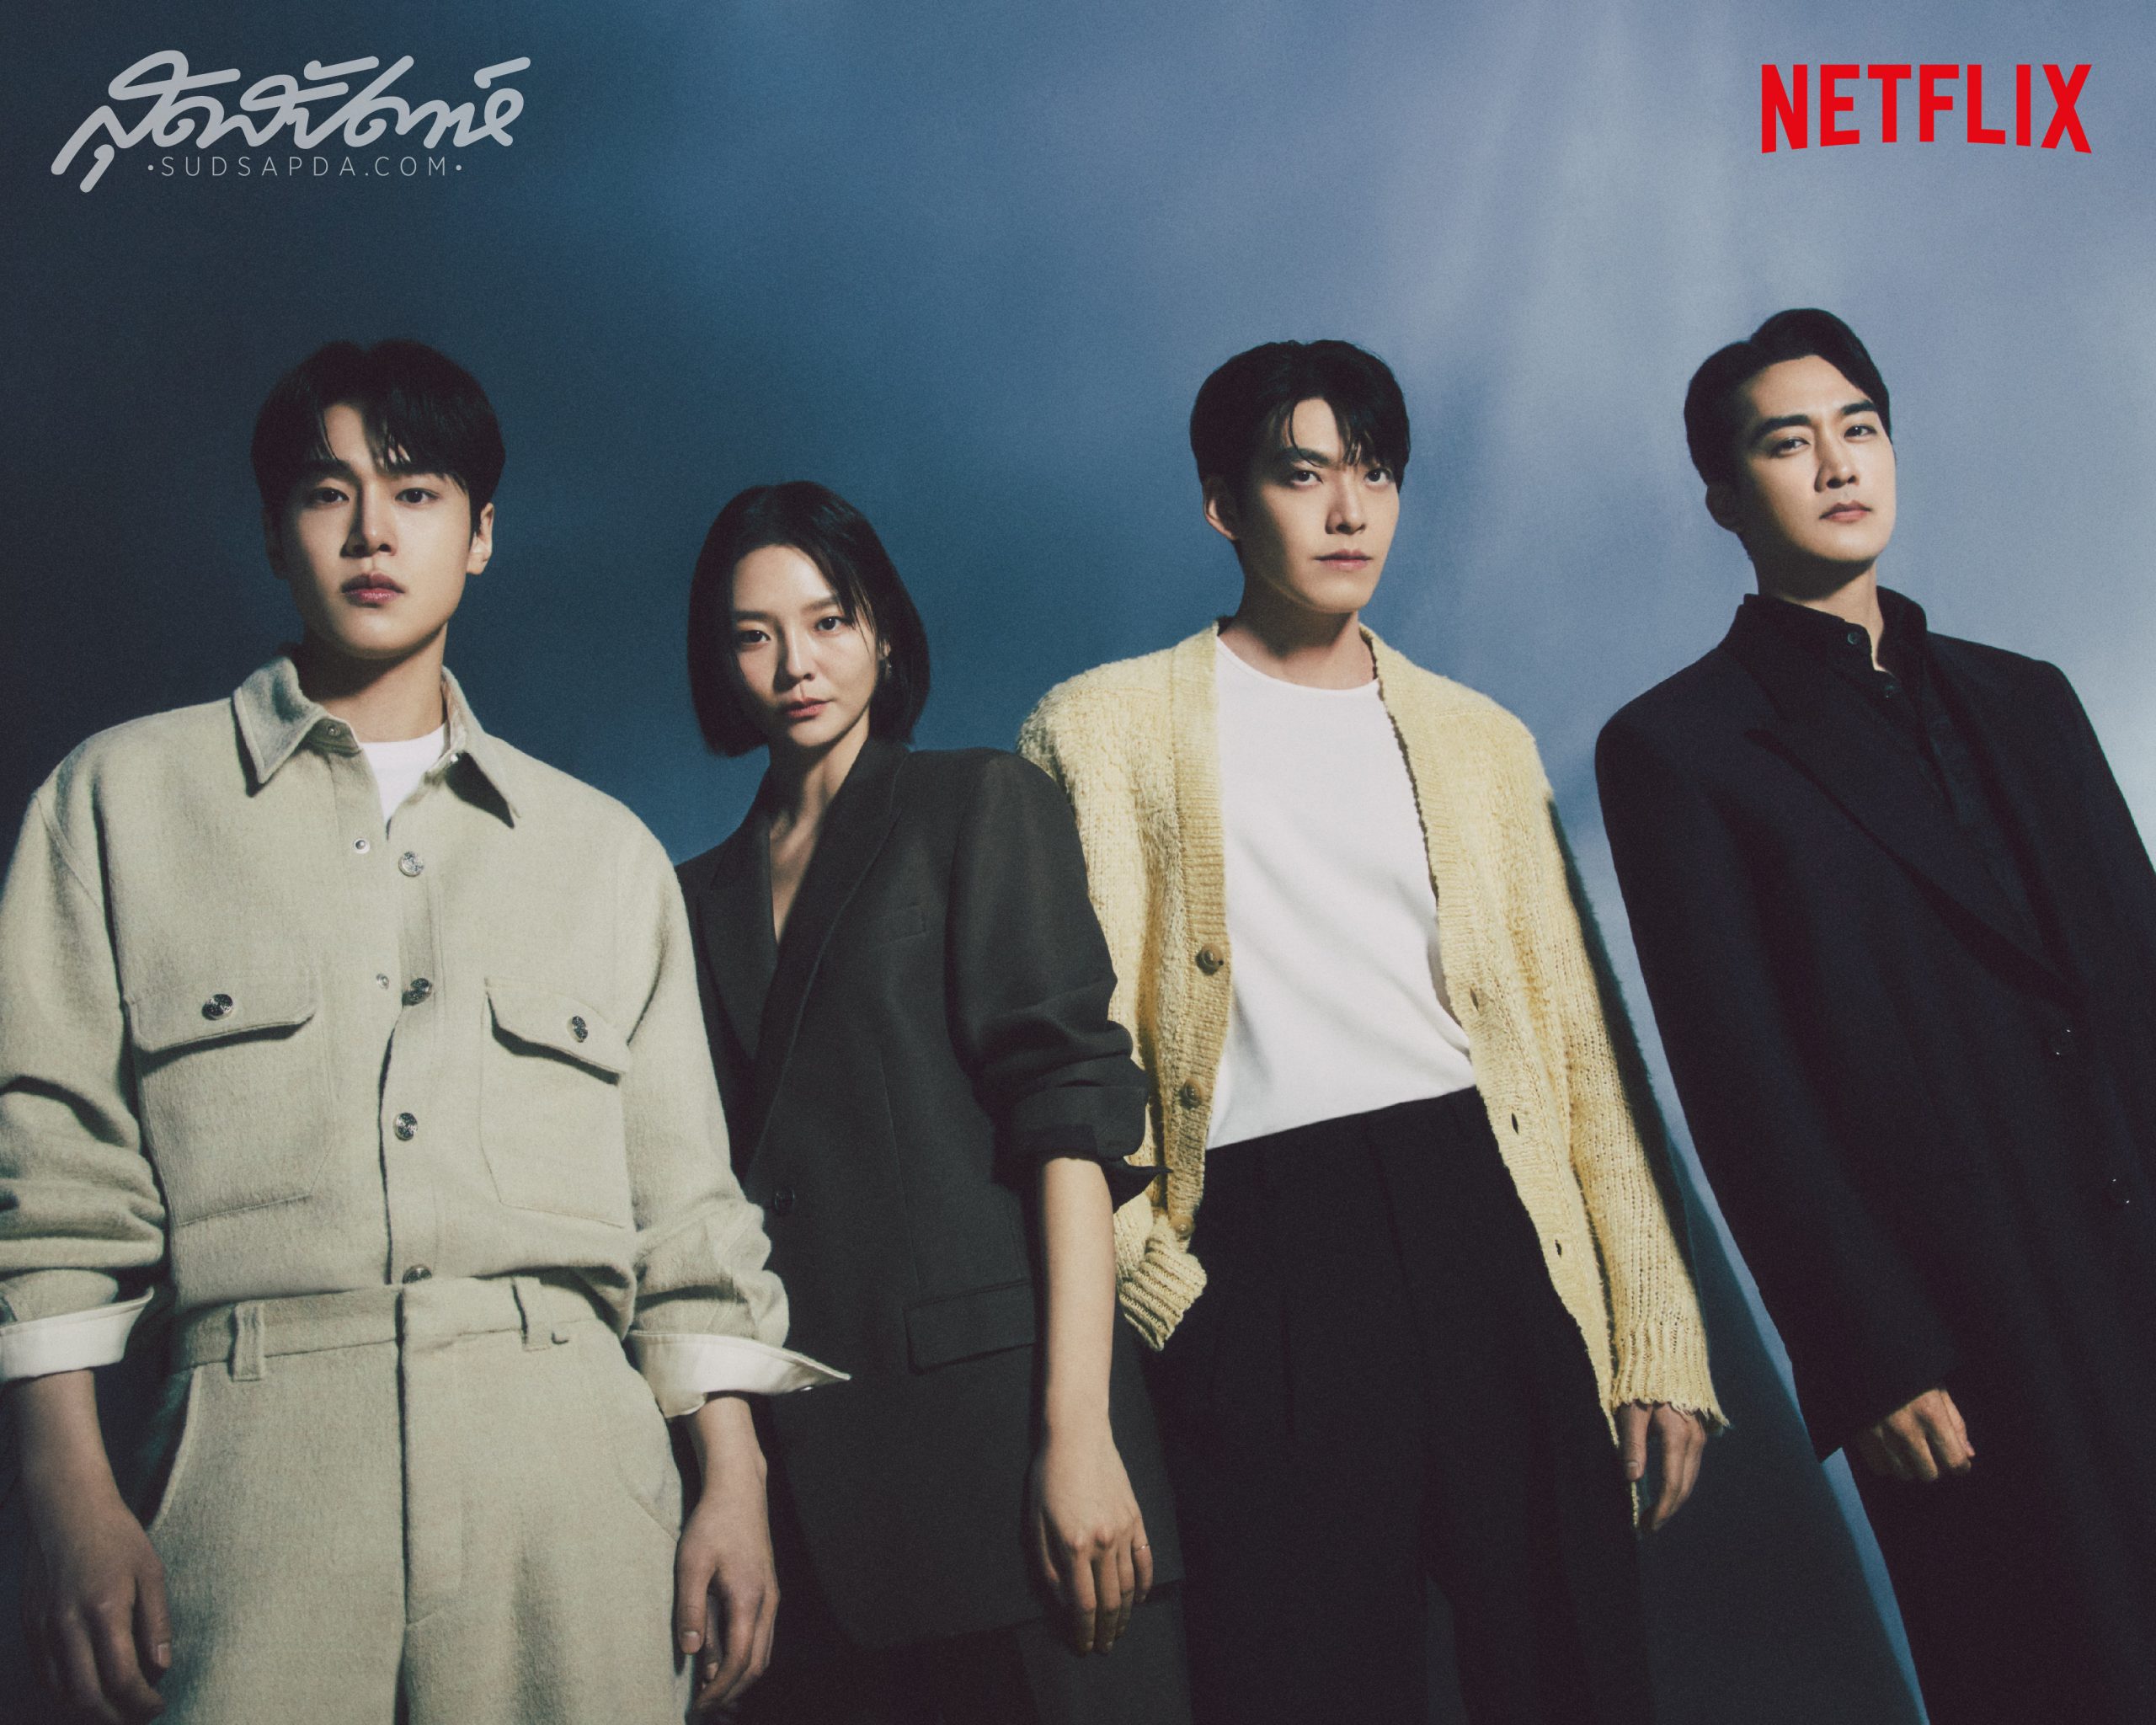 Black Knight, คิมอูบิน, 김우빈, Kim Woo Bin, ซงซึงฮอน, คังยูซอก, อีซม, Netflix, ซีรี่ย์เกาหลี Netflix, ซีรี่ส์เกาหลี Netflix, ซีรี่ส์เกาหลี Netflix